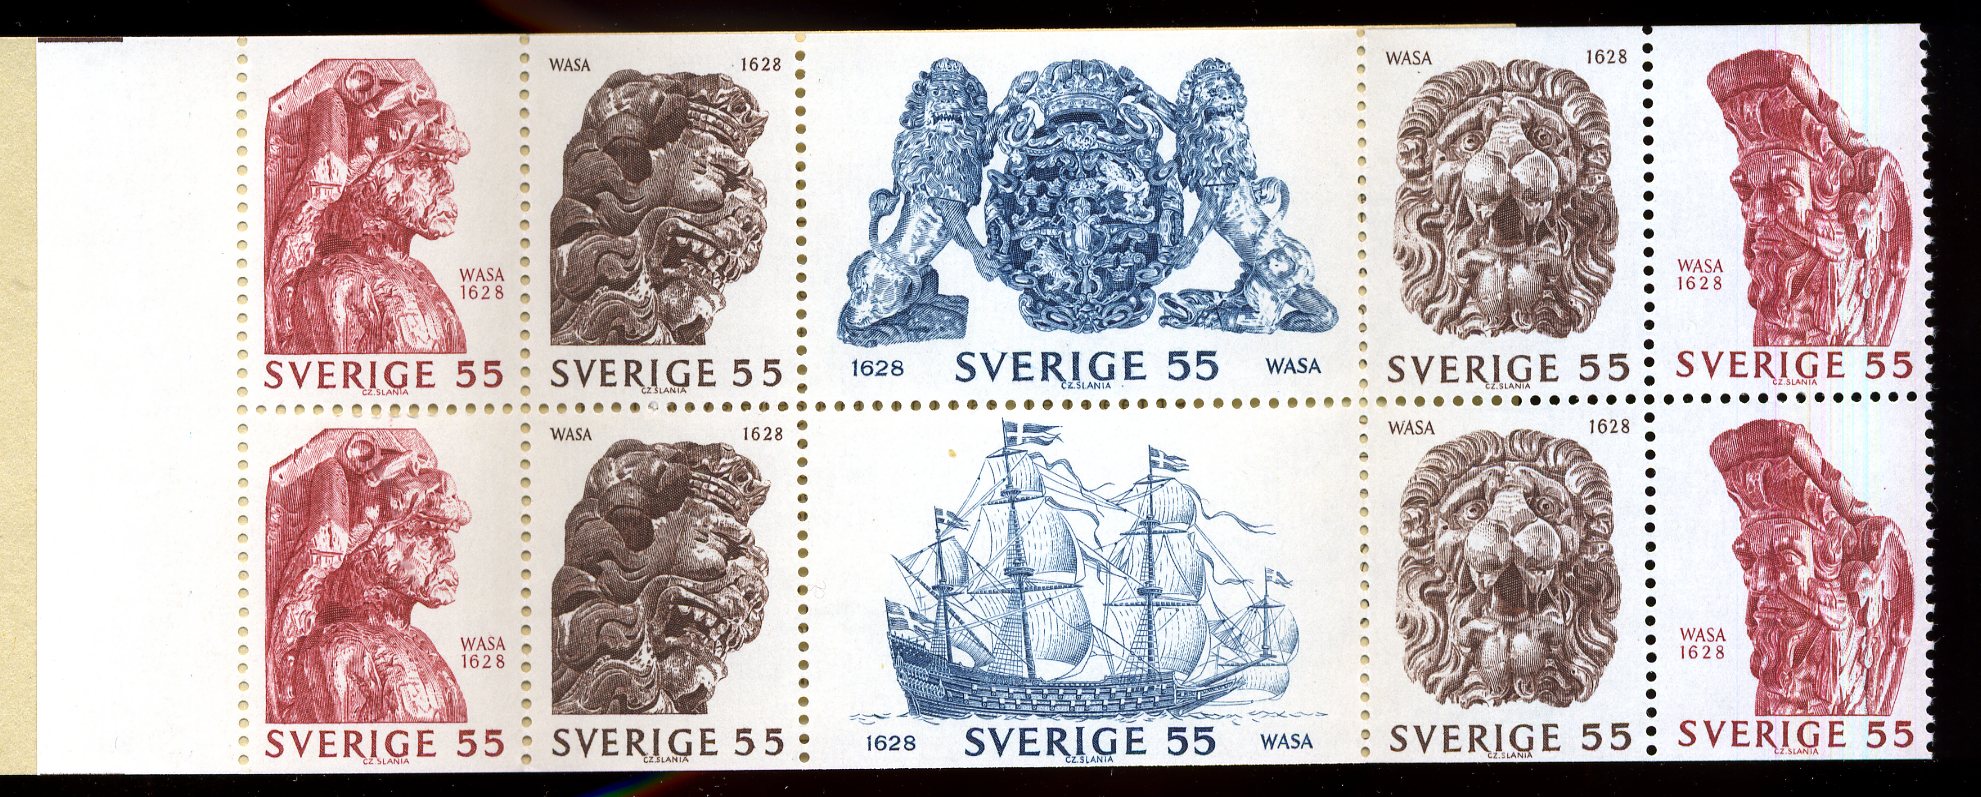 WASA-timbres-1969